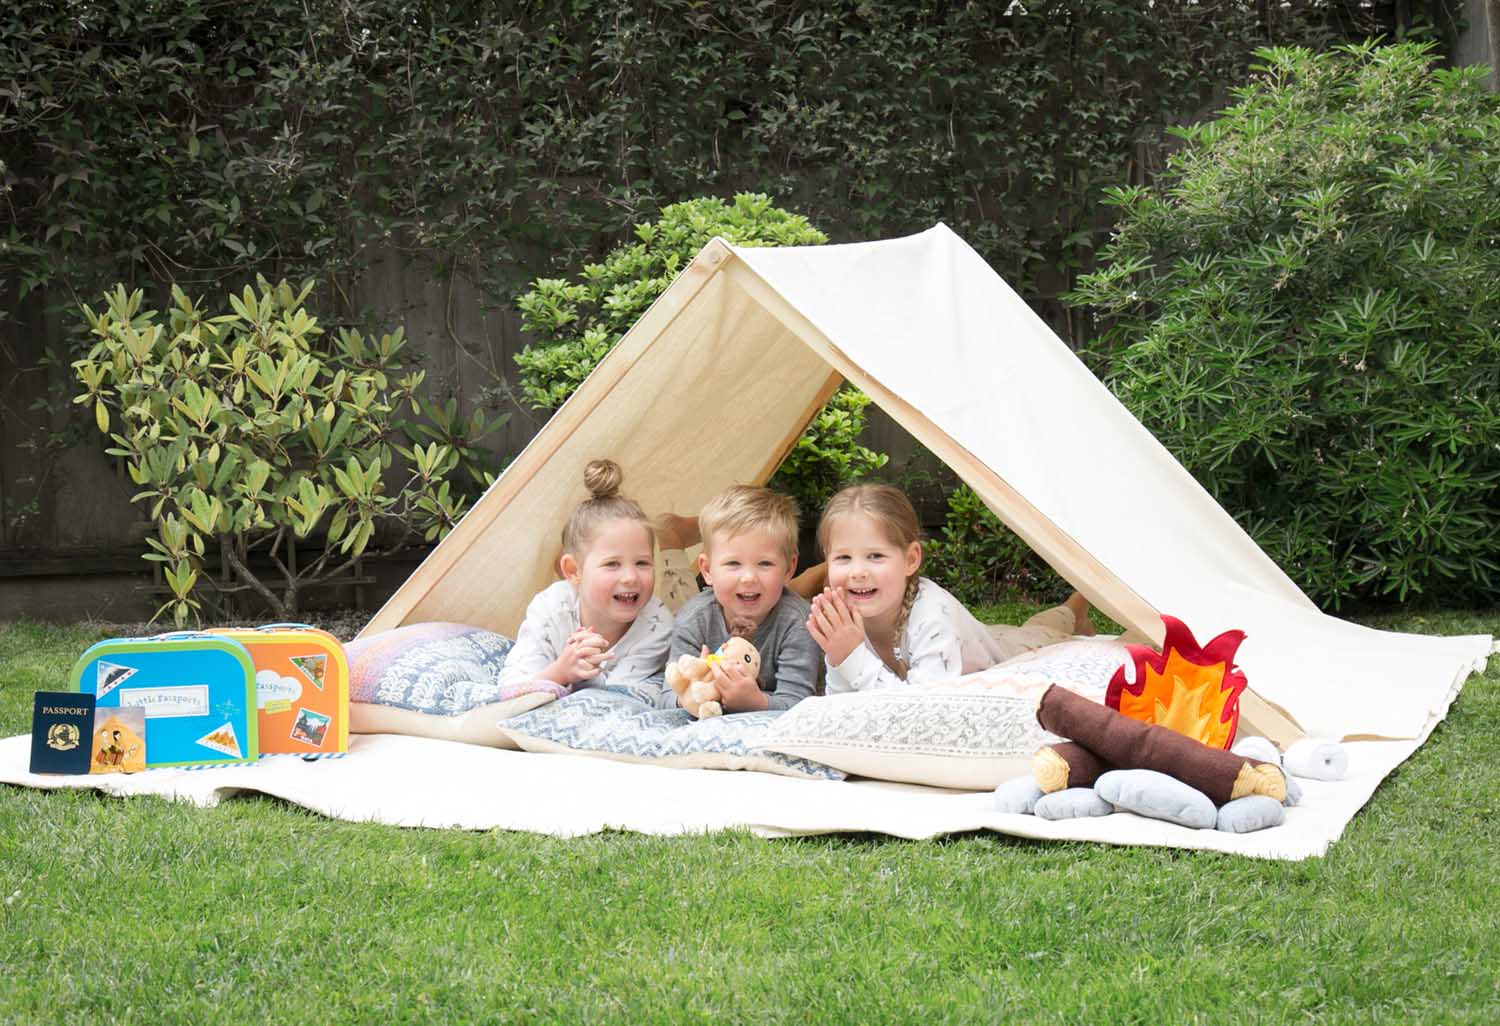 Camping for kids. Палатка для детей. Дети туризм палатка. Ребёнок у палатки в горах. Пикник с палаткой и детьми.